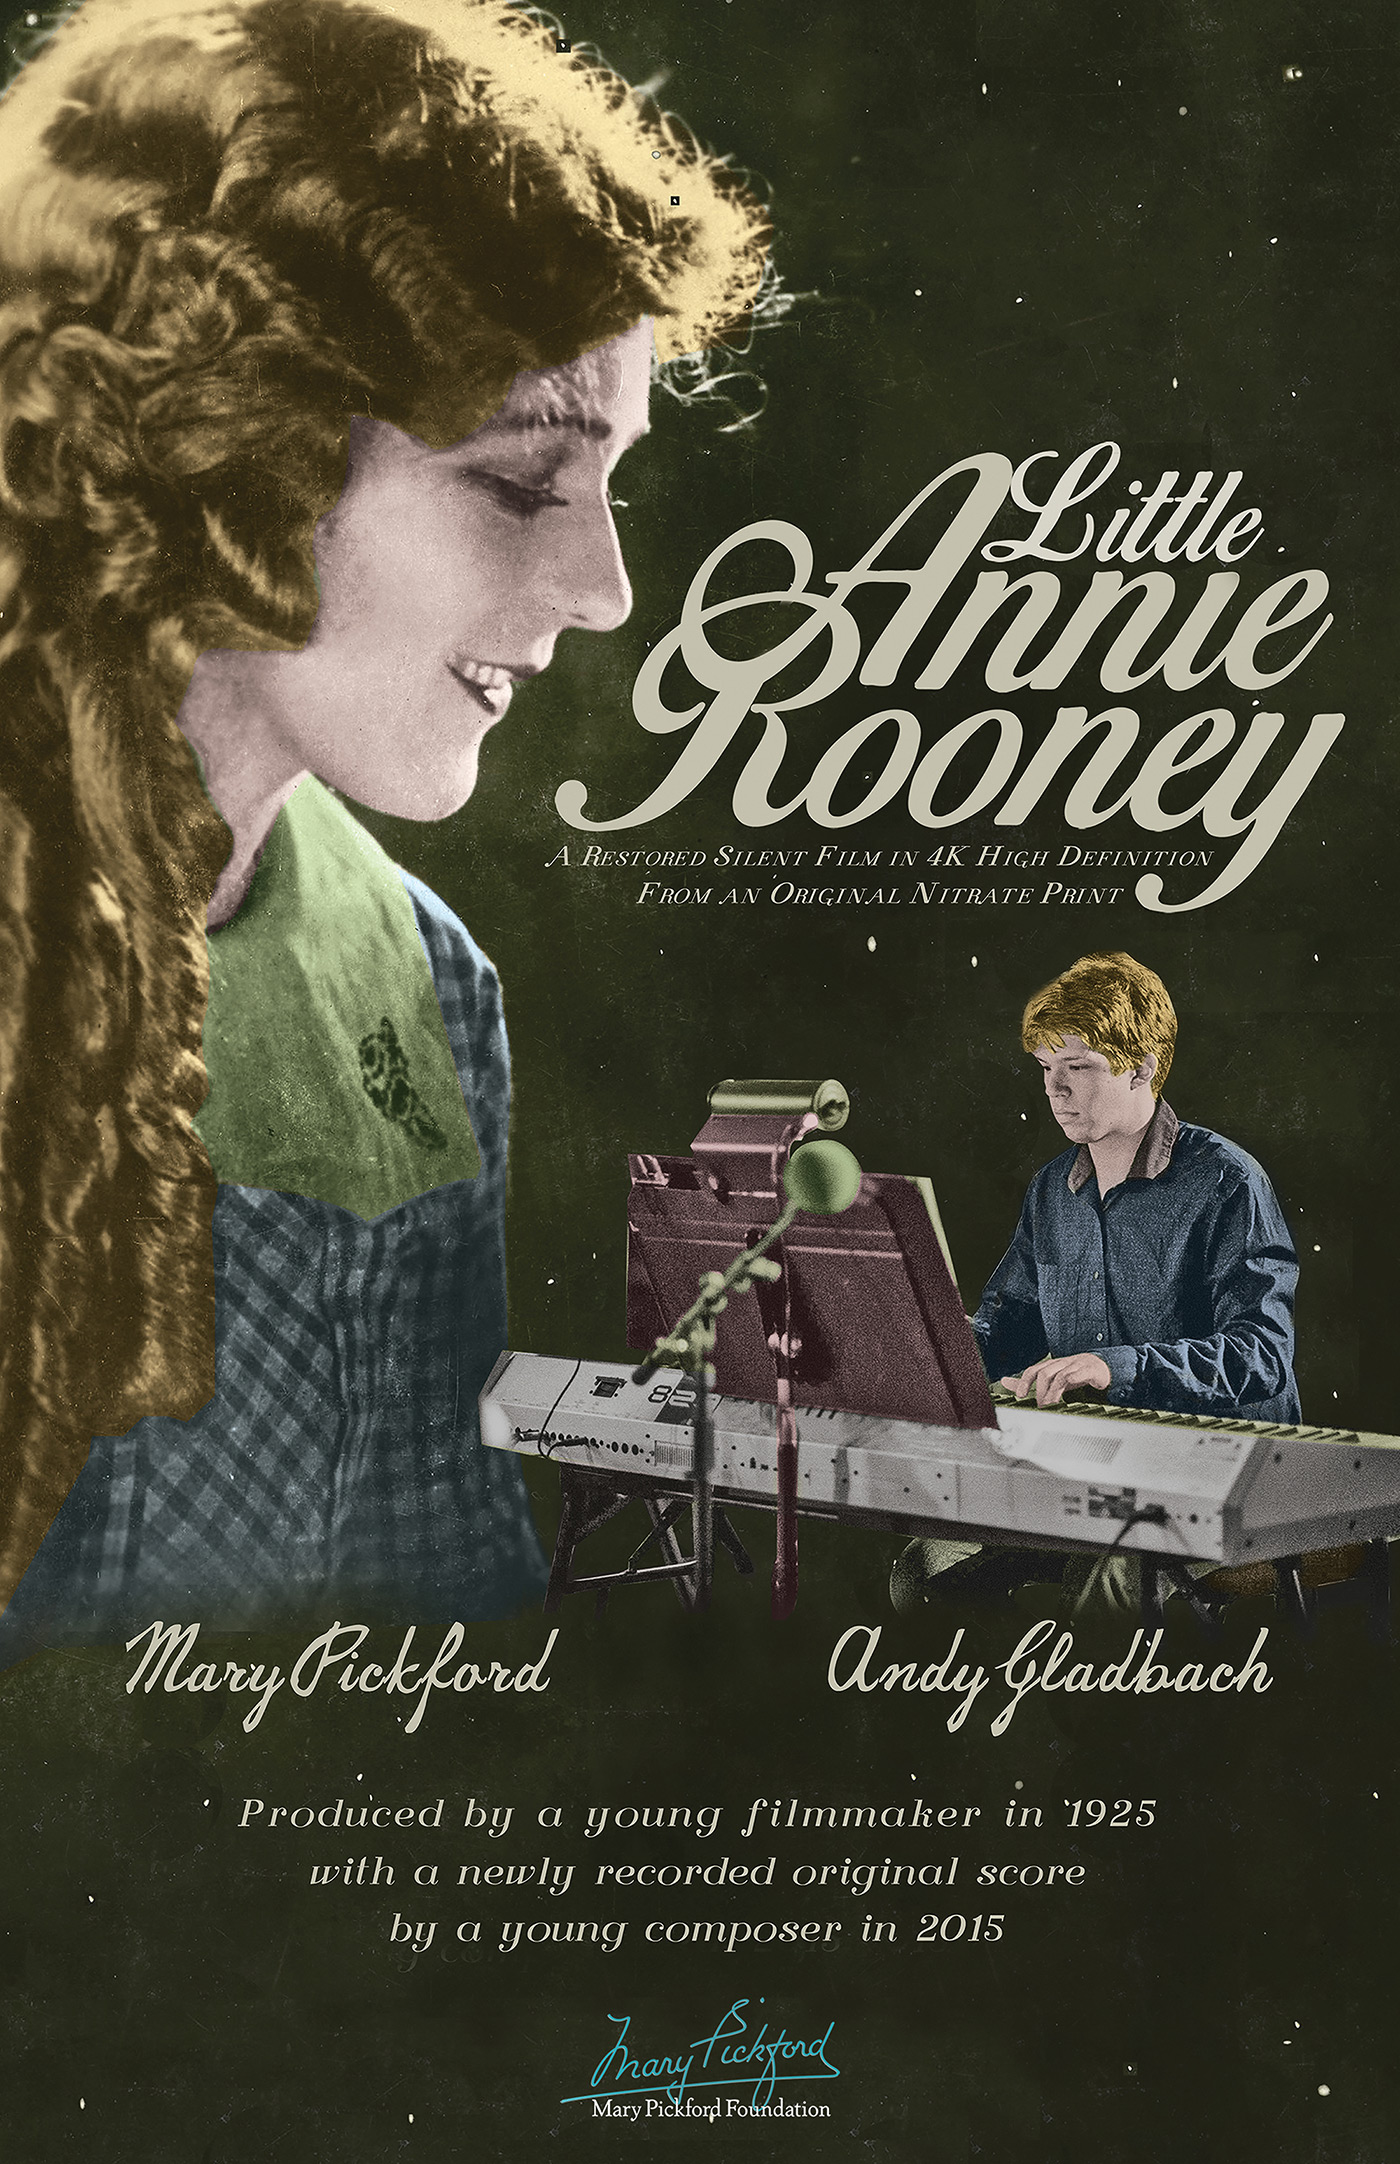 Little Annie Rooney 4k Restoration Screening Poster